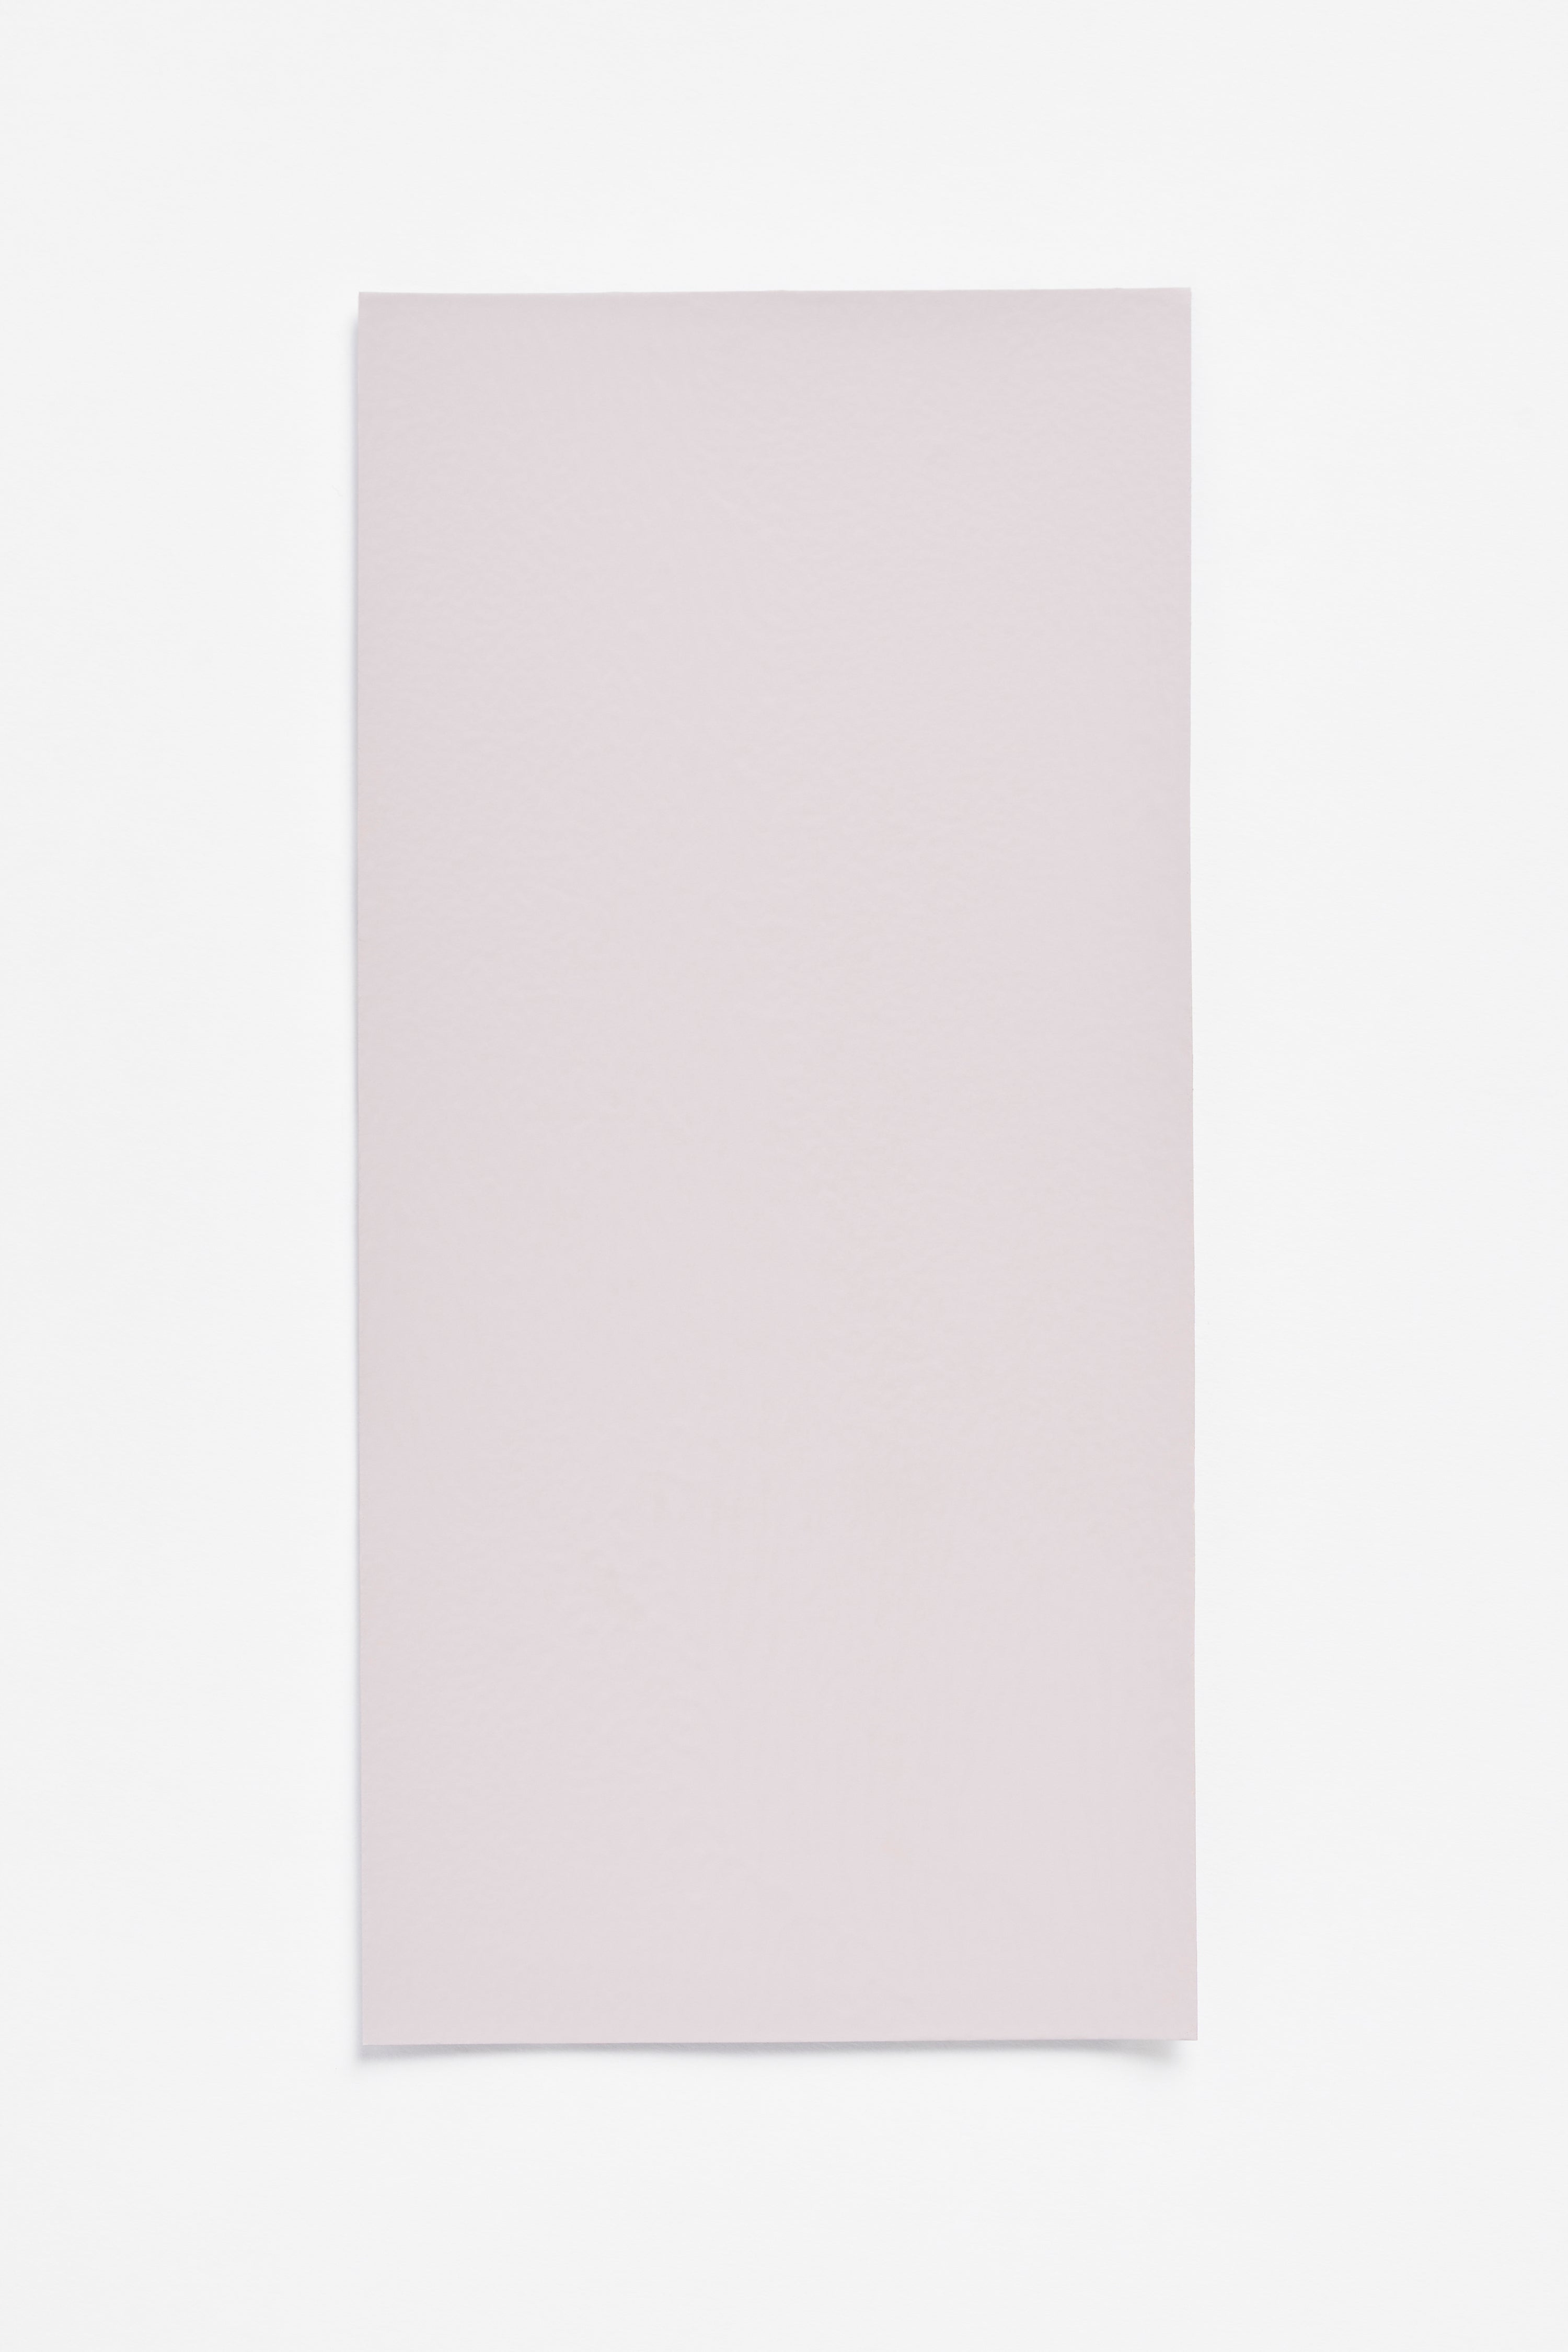 Raisin Light — a paint colour developed by Sabine Marcelis for Blēo